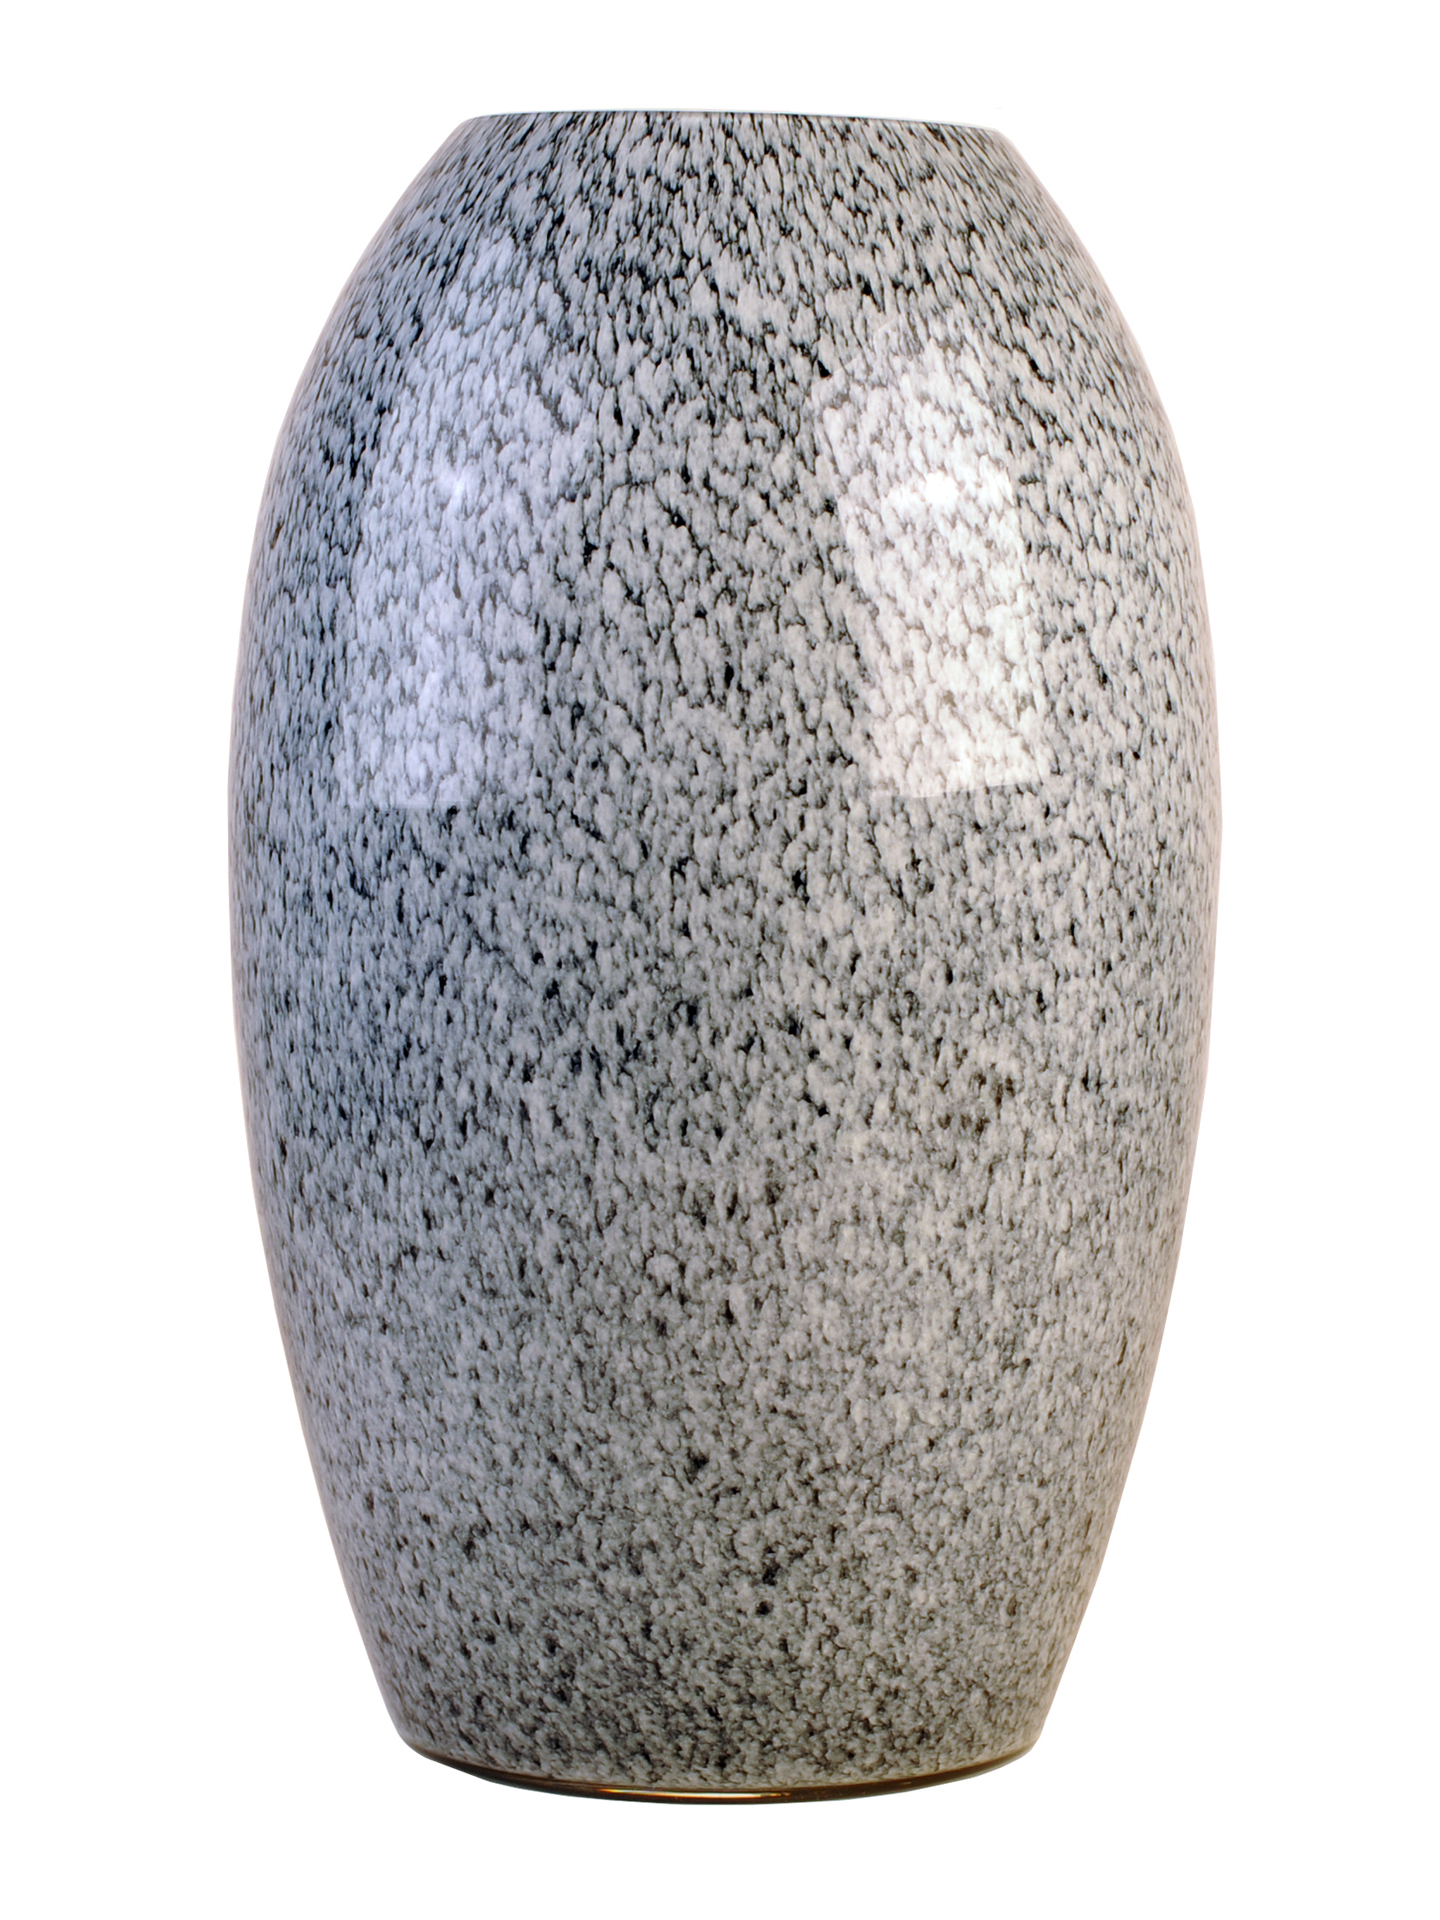 Ovoid Shaped Vase